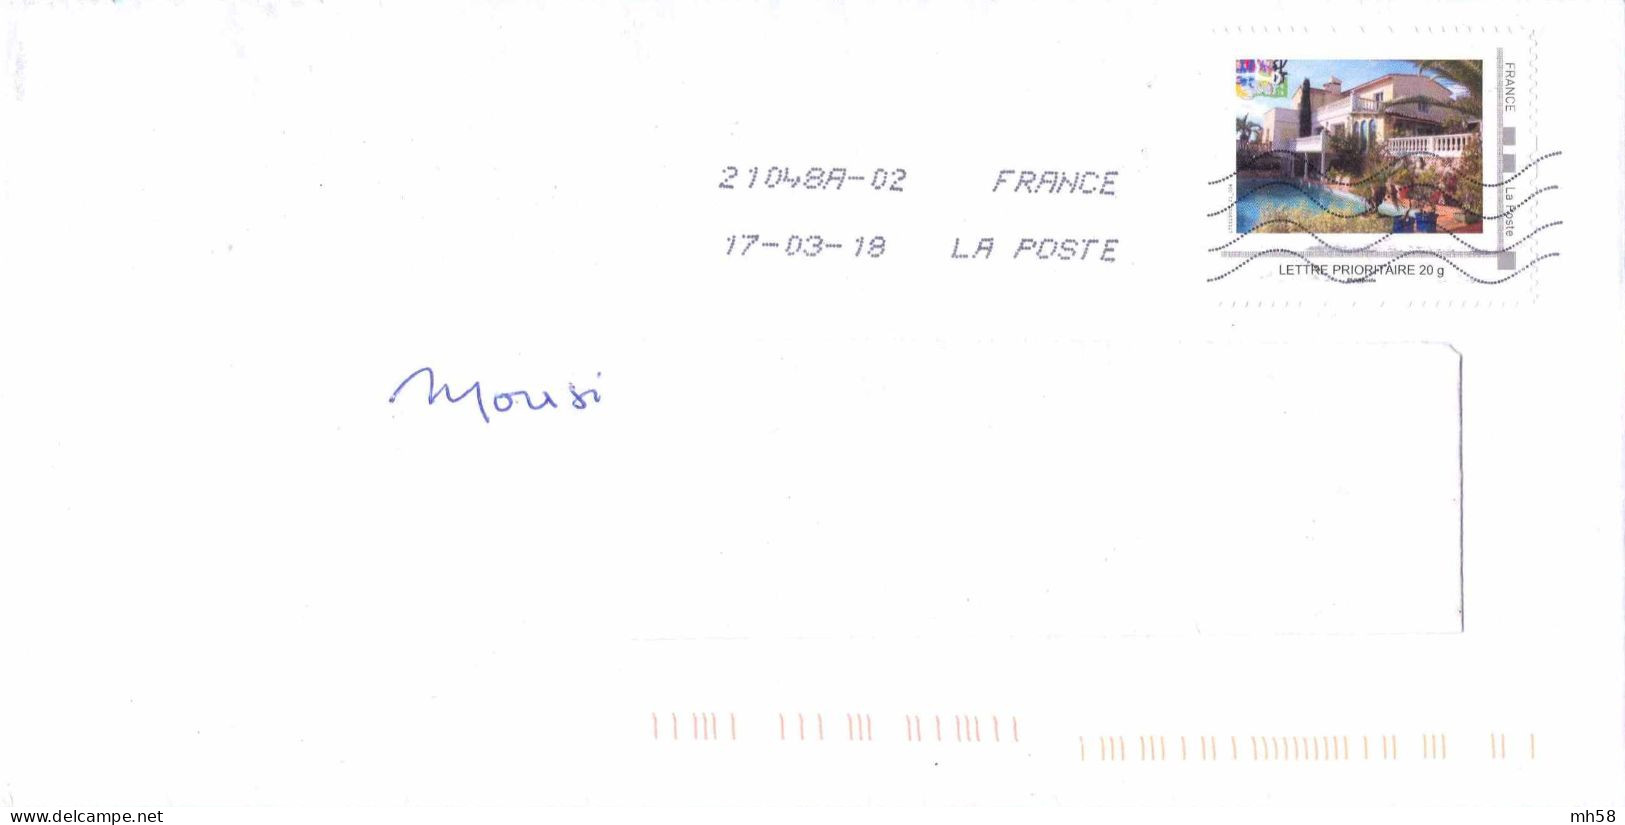 FRANCE - MonTimbraMoi Villa Avec Piscine Sur Enveloppe De 2018 - Lettre Prioritaire 20g - Cartas & Documentos